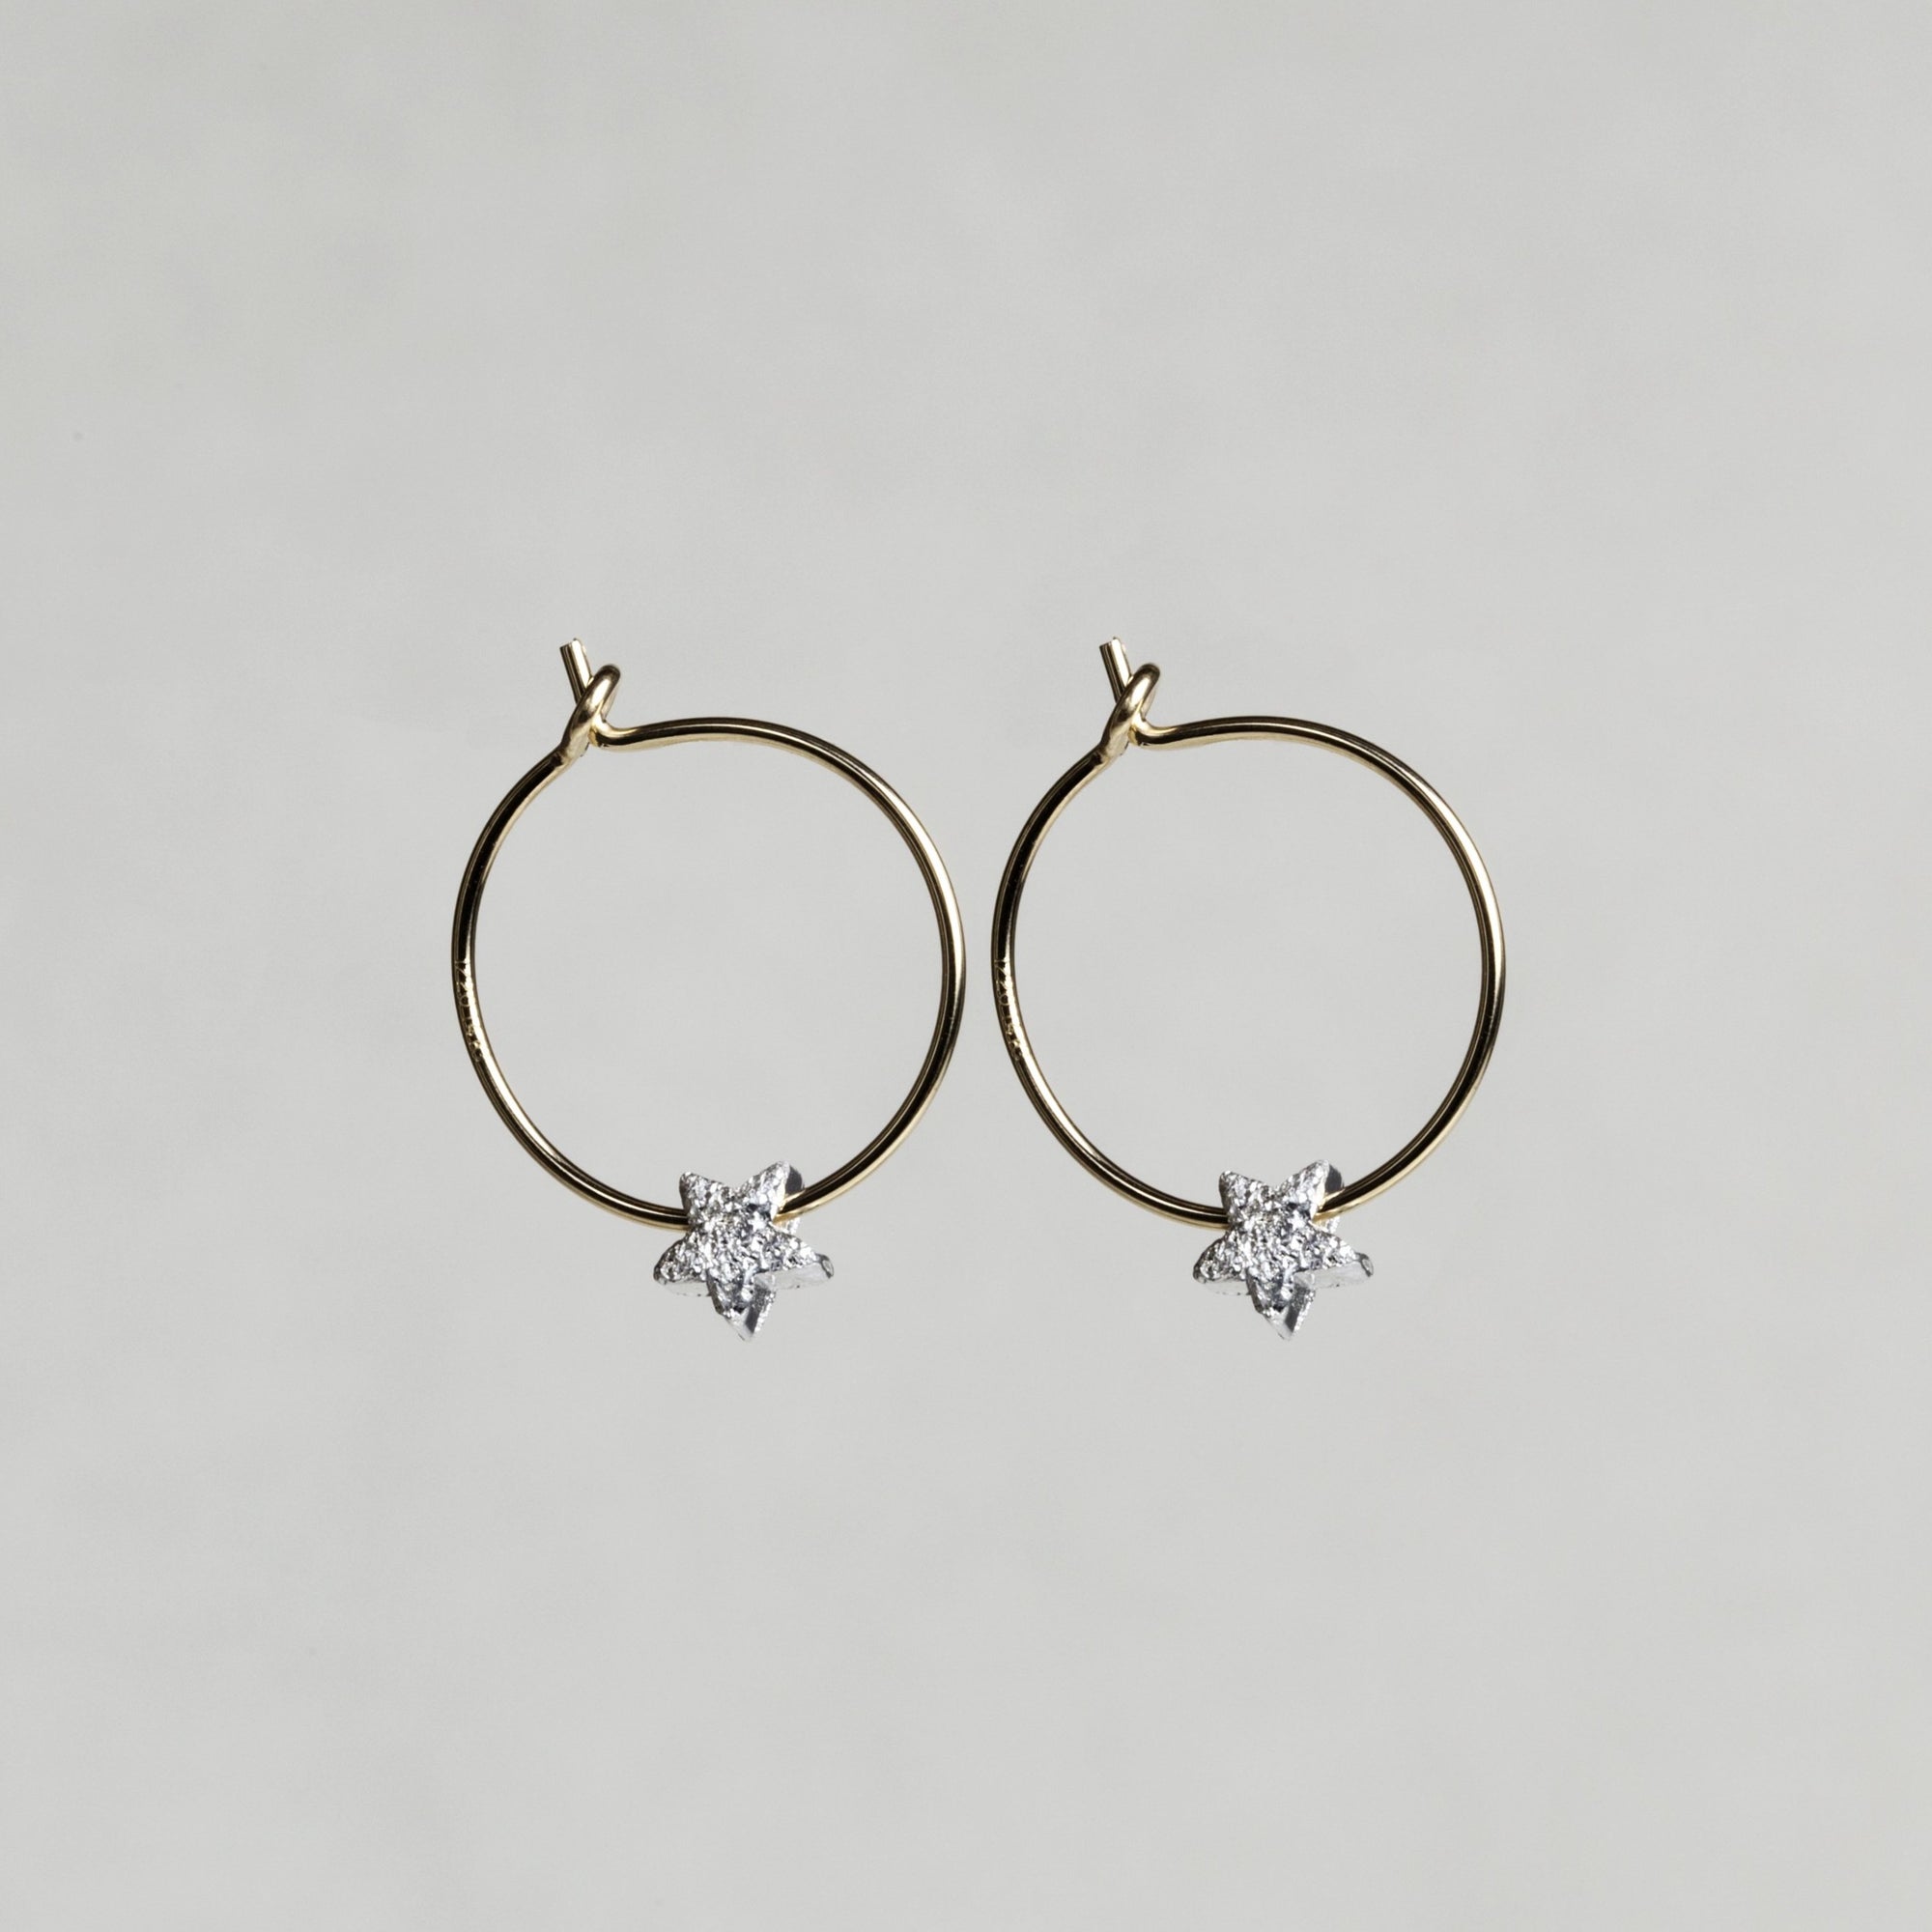 Gold plated star bead hoop earrings